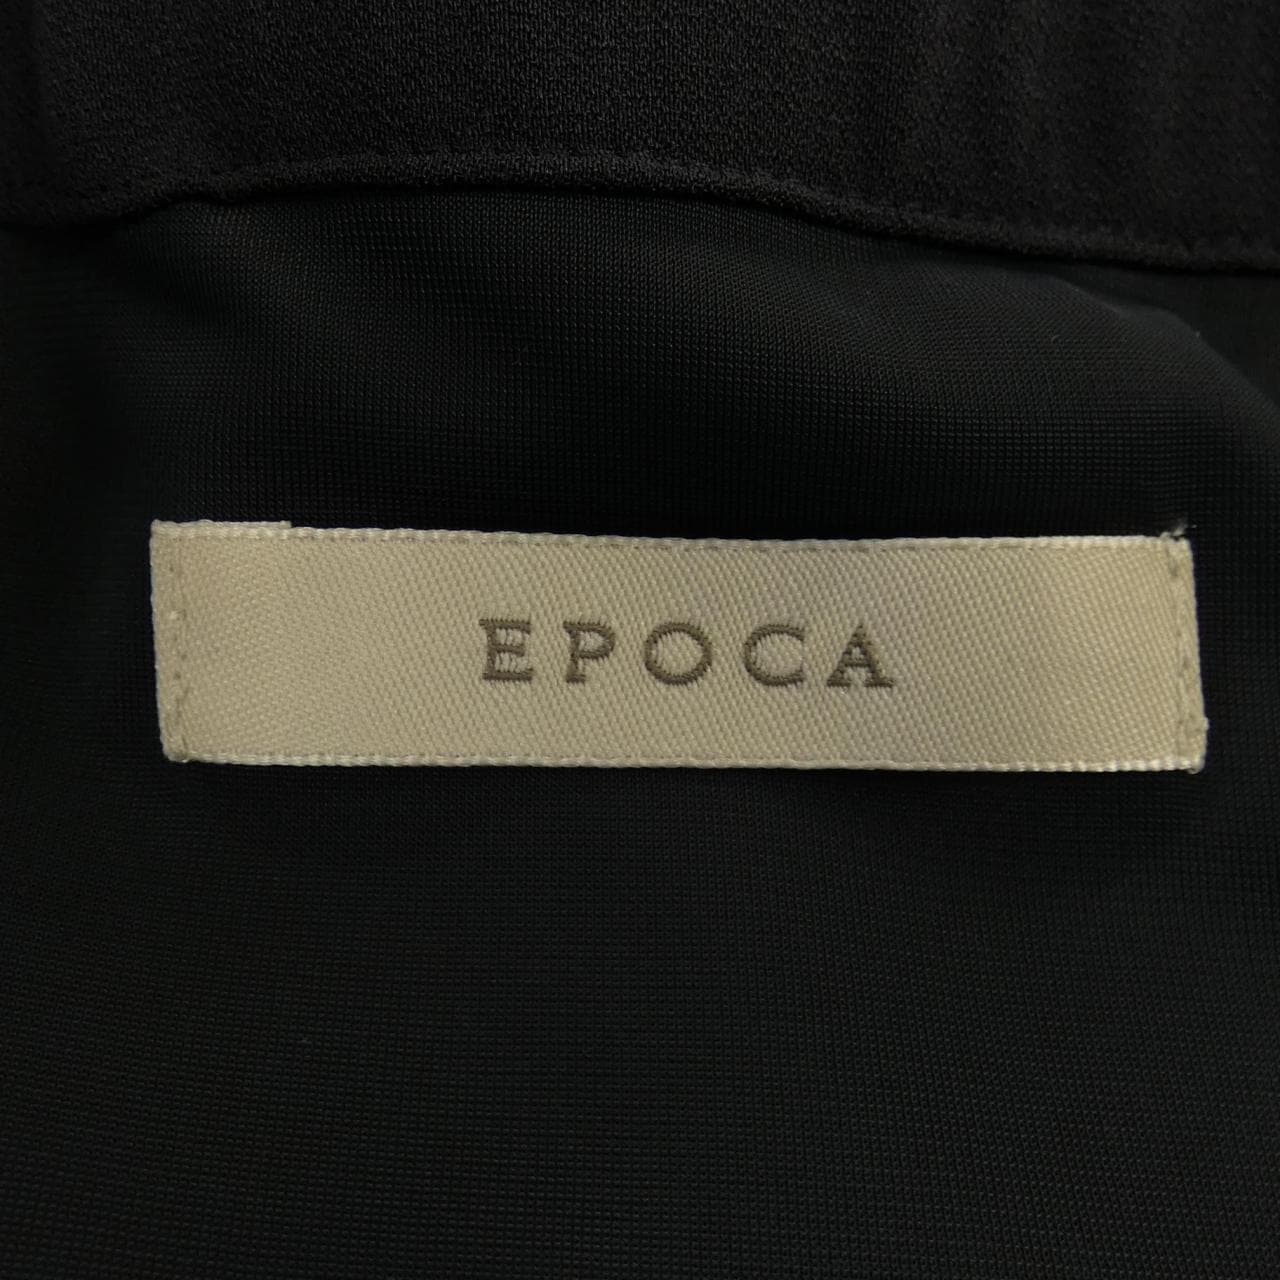 Epoca EPOCA skirt